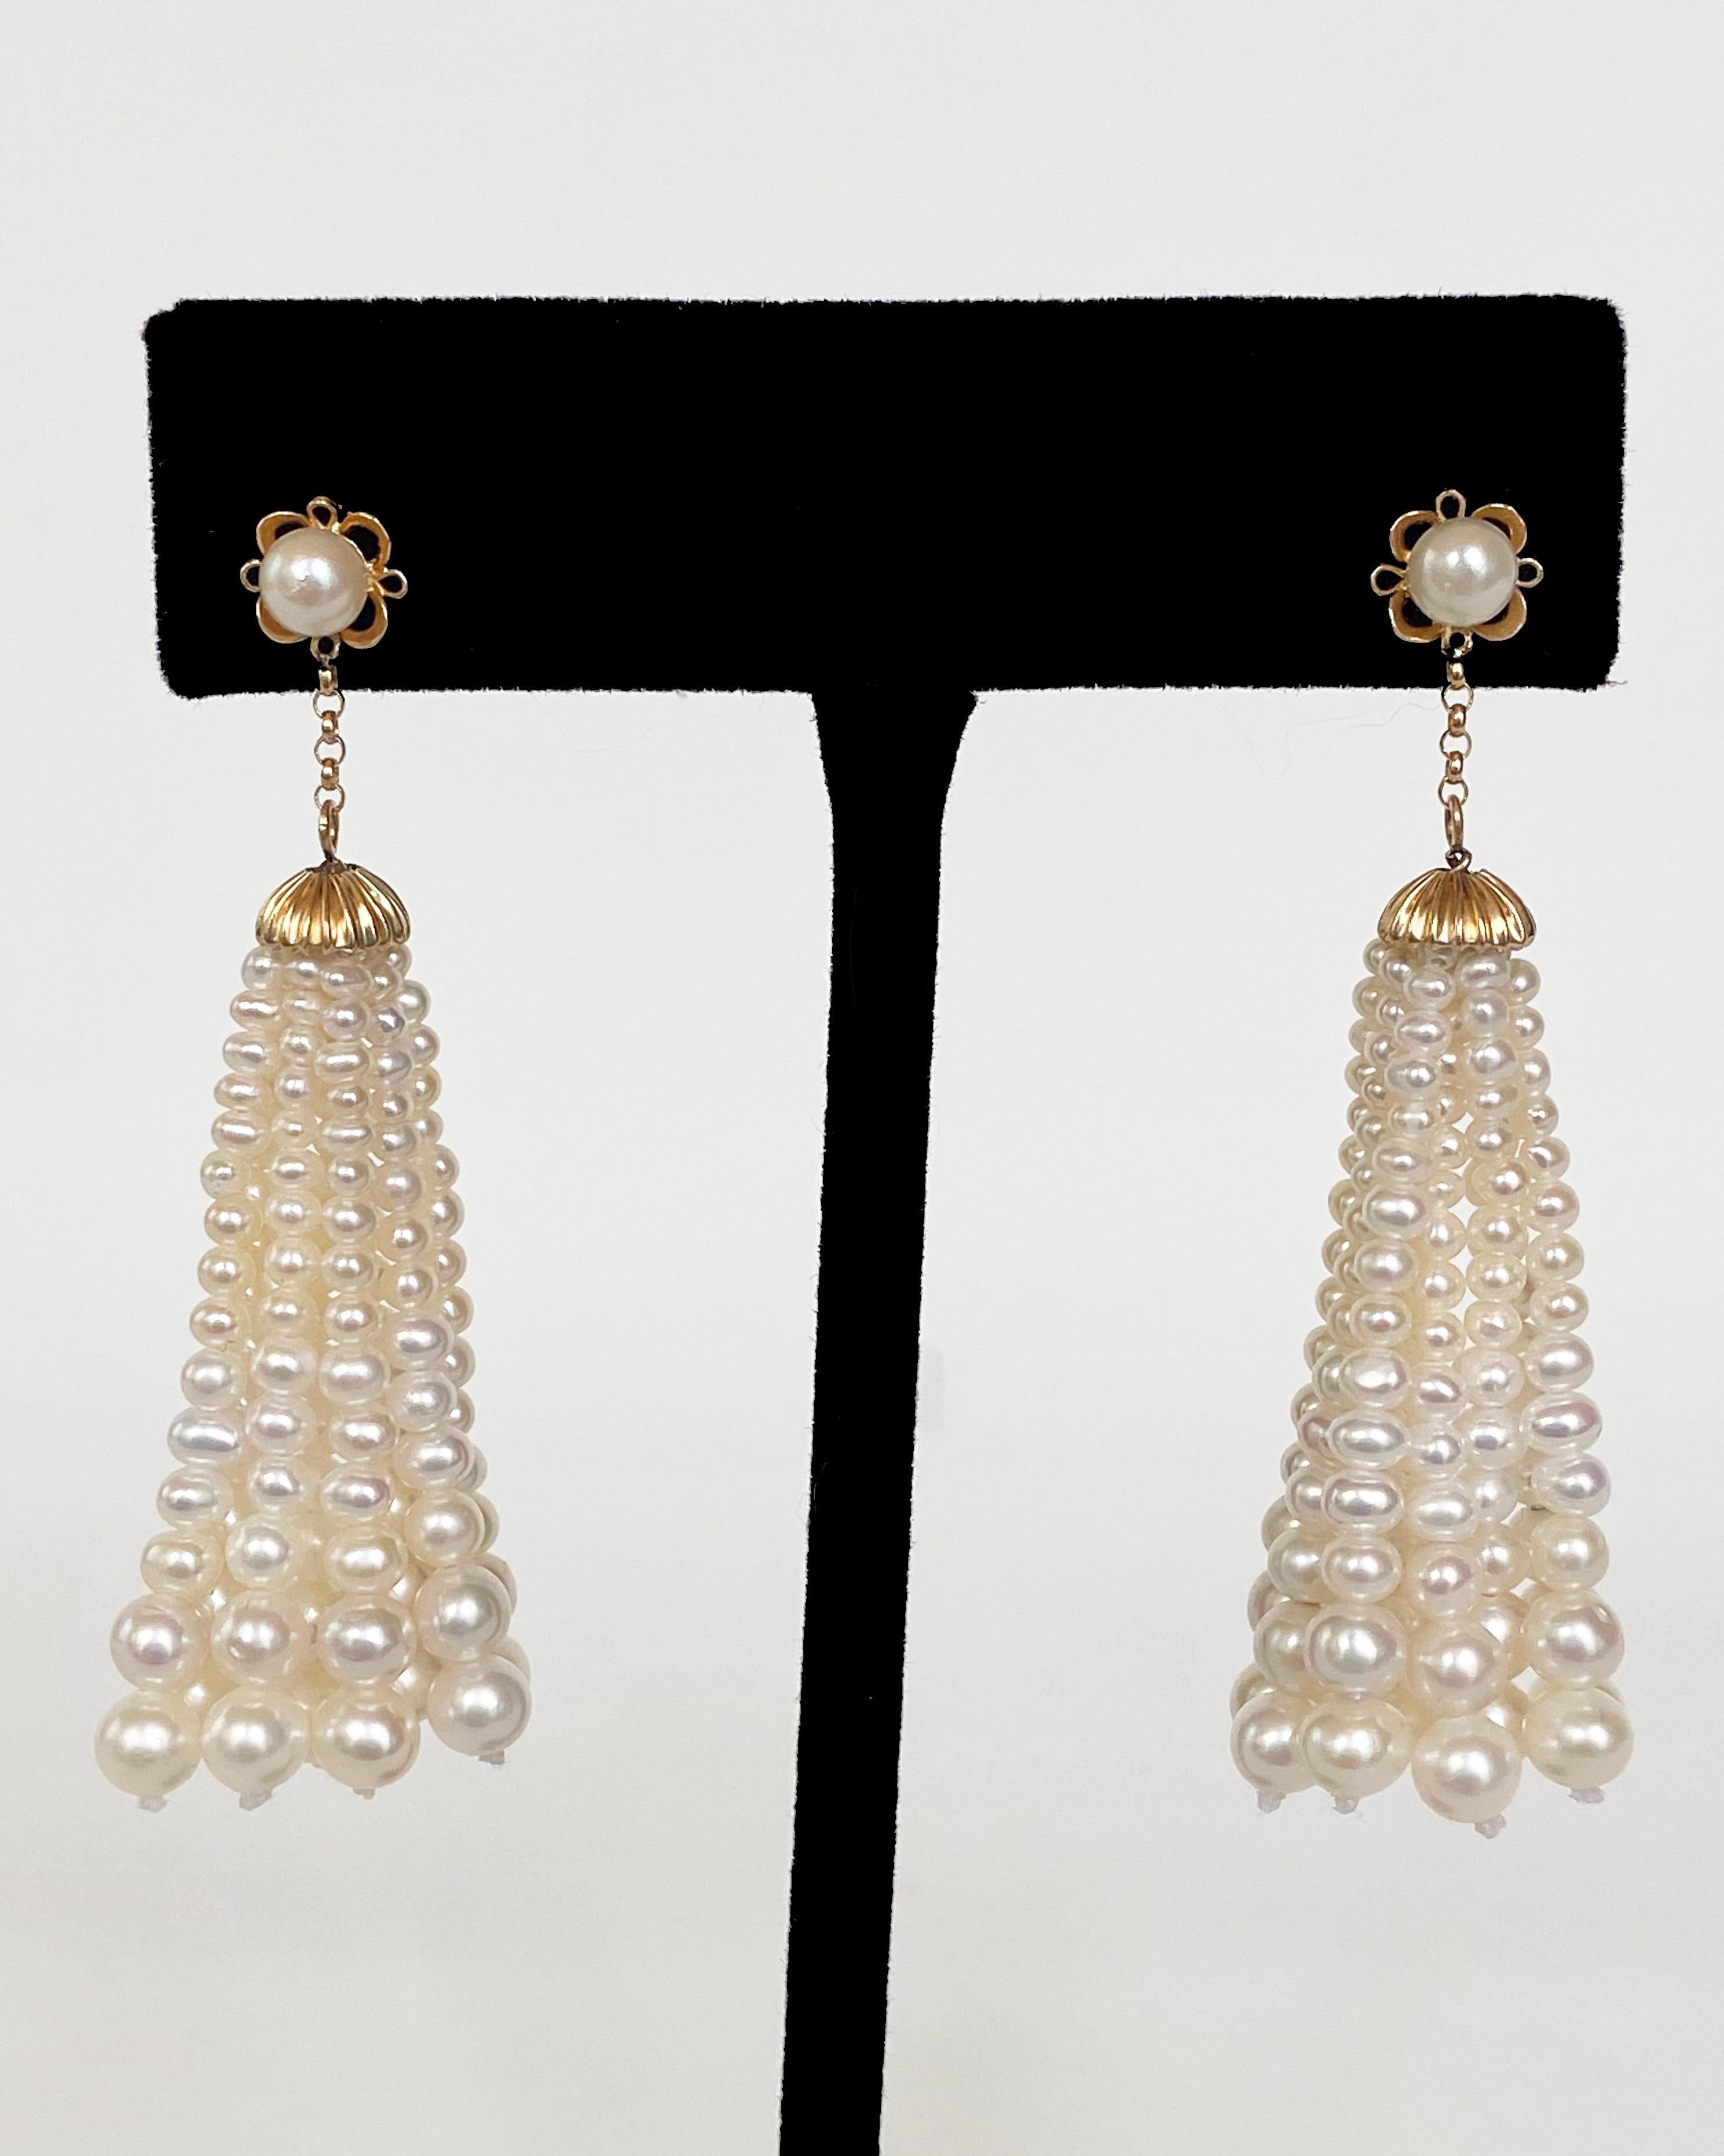 Ein leichtes und doch kühnes Paar Ohrringe von Marina J. Dieses elegante Paar zeichnet sich durch eine in eine Perle eingebettete Blume aus massivem 14-karätigem Gelbgold mit einem Nietenbesatz auf der Rückseite aus. Unter dem floralen Design hängt